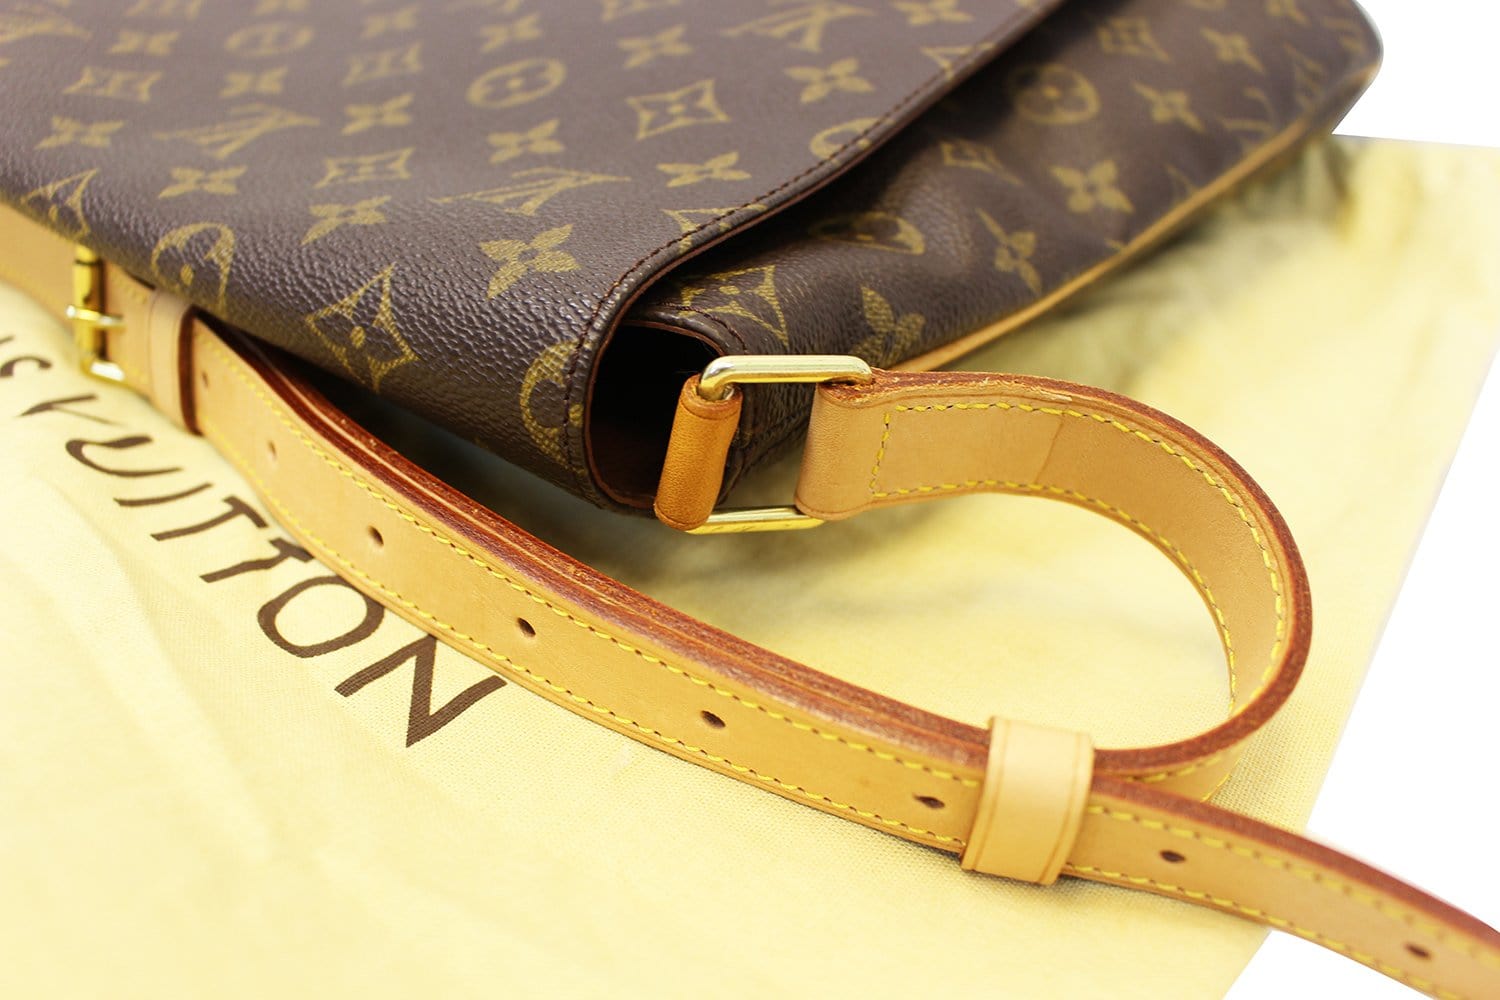 Louis Vuitton, Bags, Authentic Louis Vuitton Musette Gm Monogram